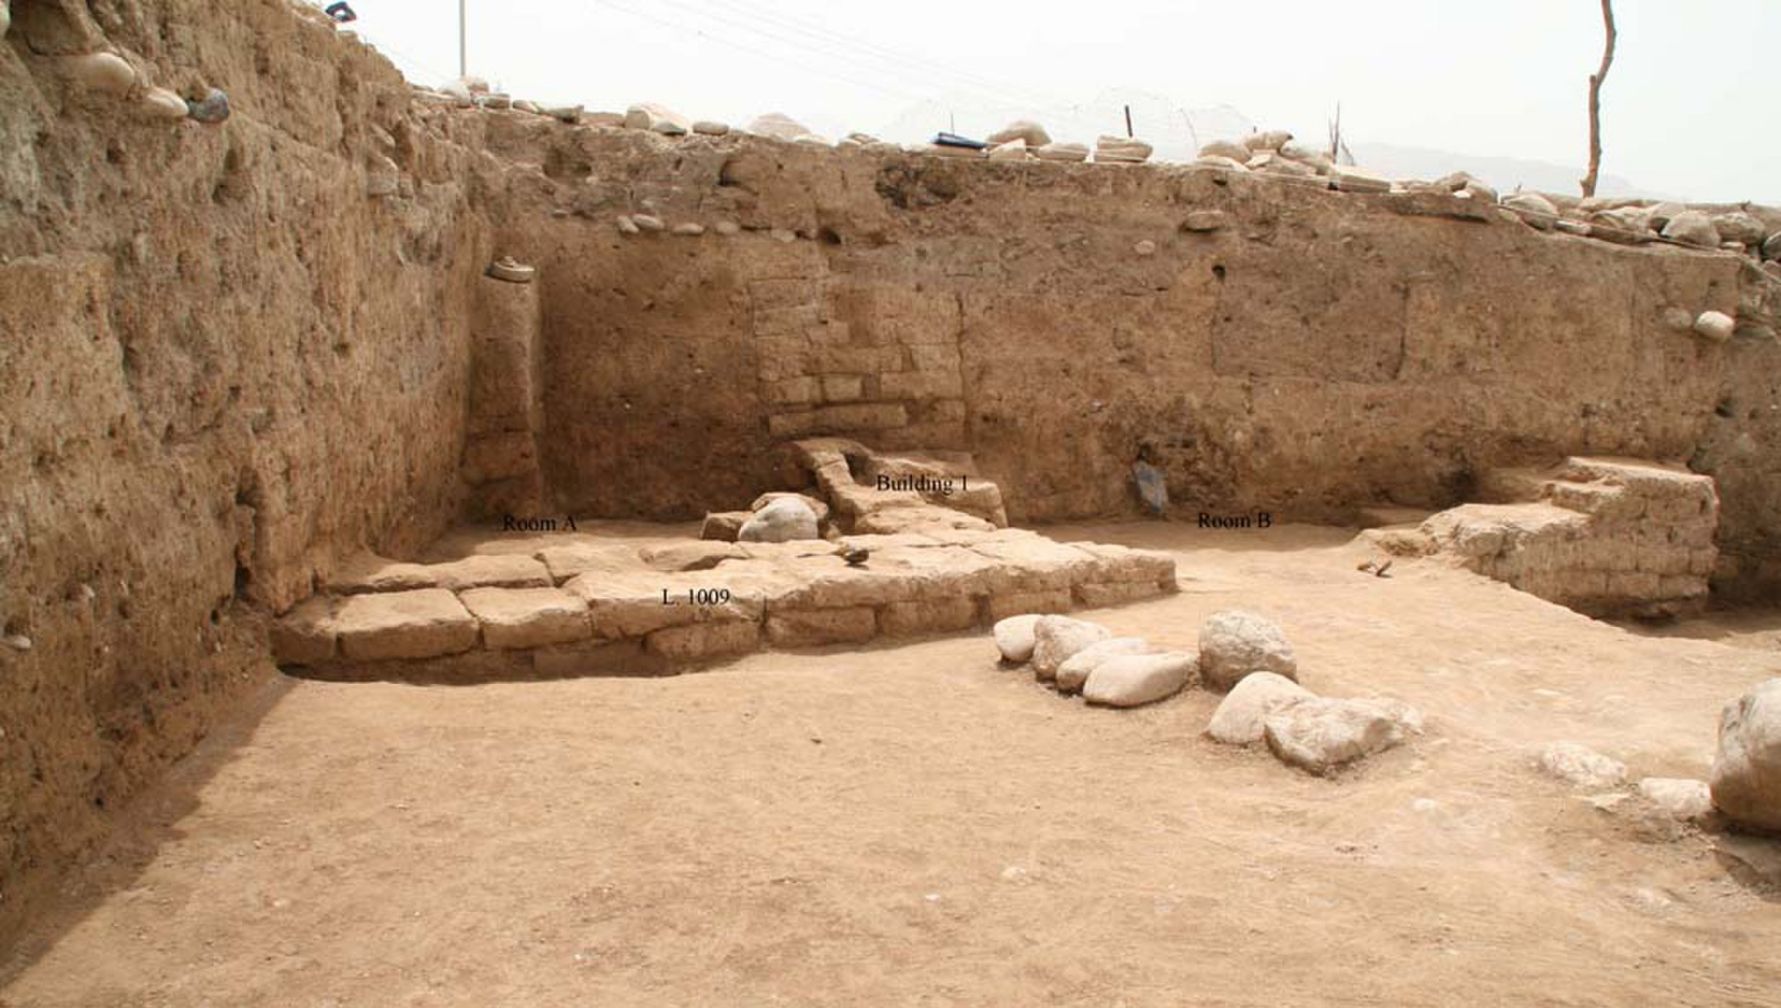 이라크 북부 쿠르드 지역의 고고학자들이 “이두”라고 불리는 고대 도시를 발견했습니다. 이곳은 중동에서 농경이 처음 등장한 신석기 시대로 거슬러 올라가 3,300년에서 2,900년 전 사이에 도시가 가장 번성했다. 여기에 표시된 건물은 적어도 2,000개의 방이 있는 국내 구조로, 파르티아 제국이 이 지역을 지배했던 약 XNUMX년 전으로 비교적 늦은 도시 생활로 거슬러 올라갑니다.